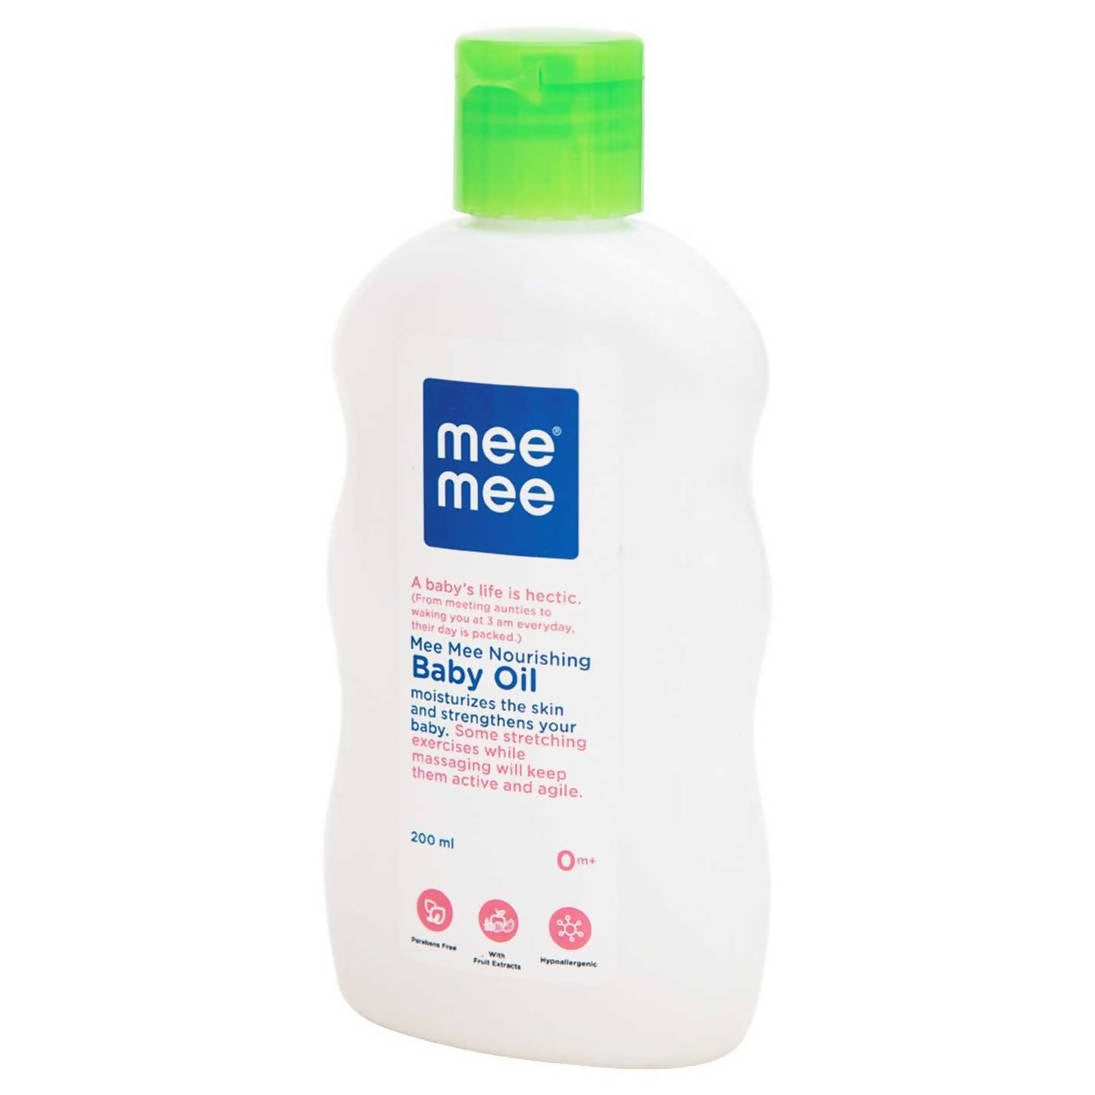 Mee Mee Nourishing Baby Oil